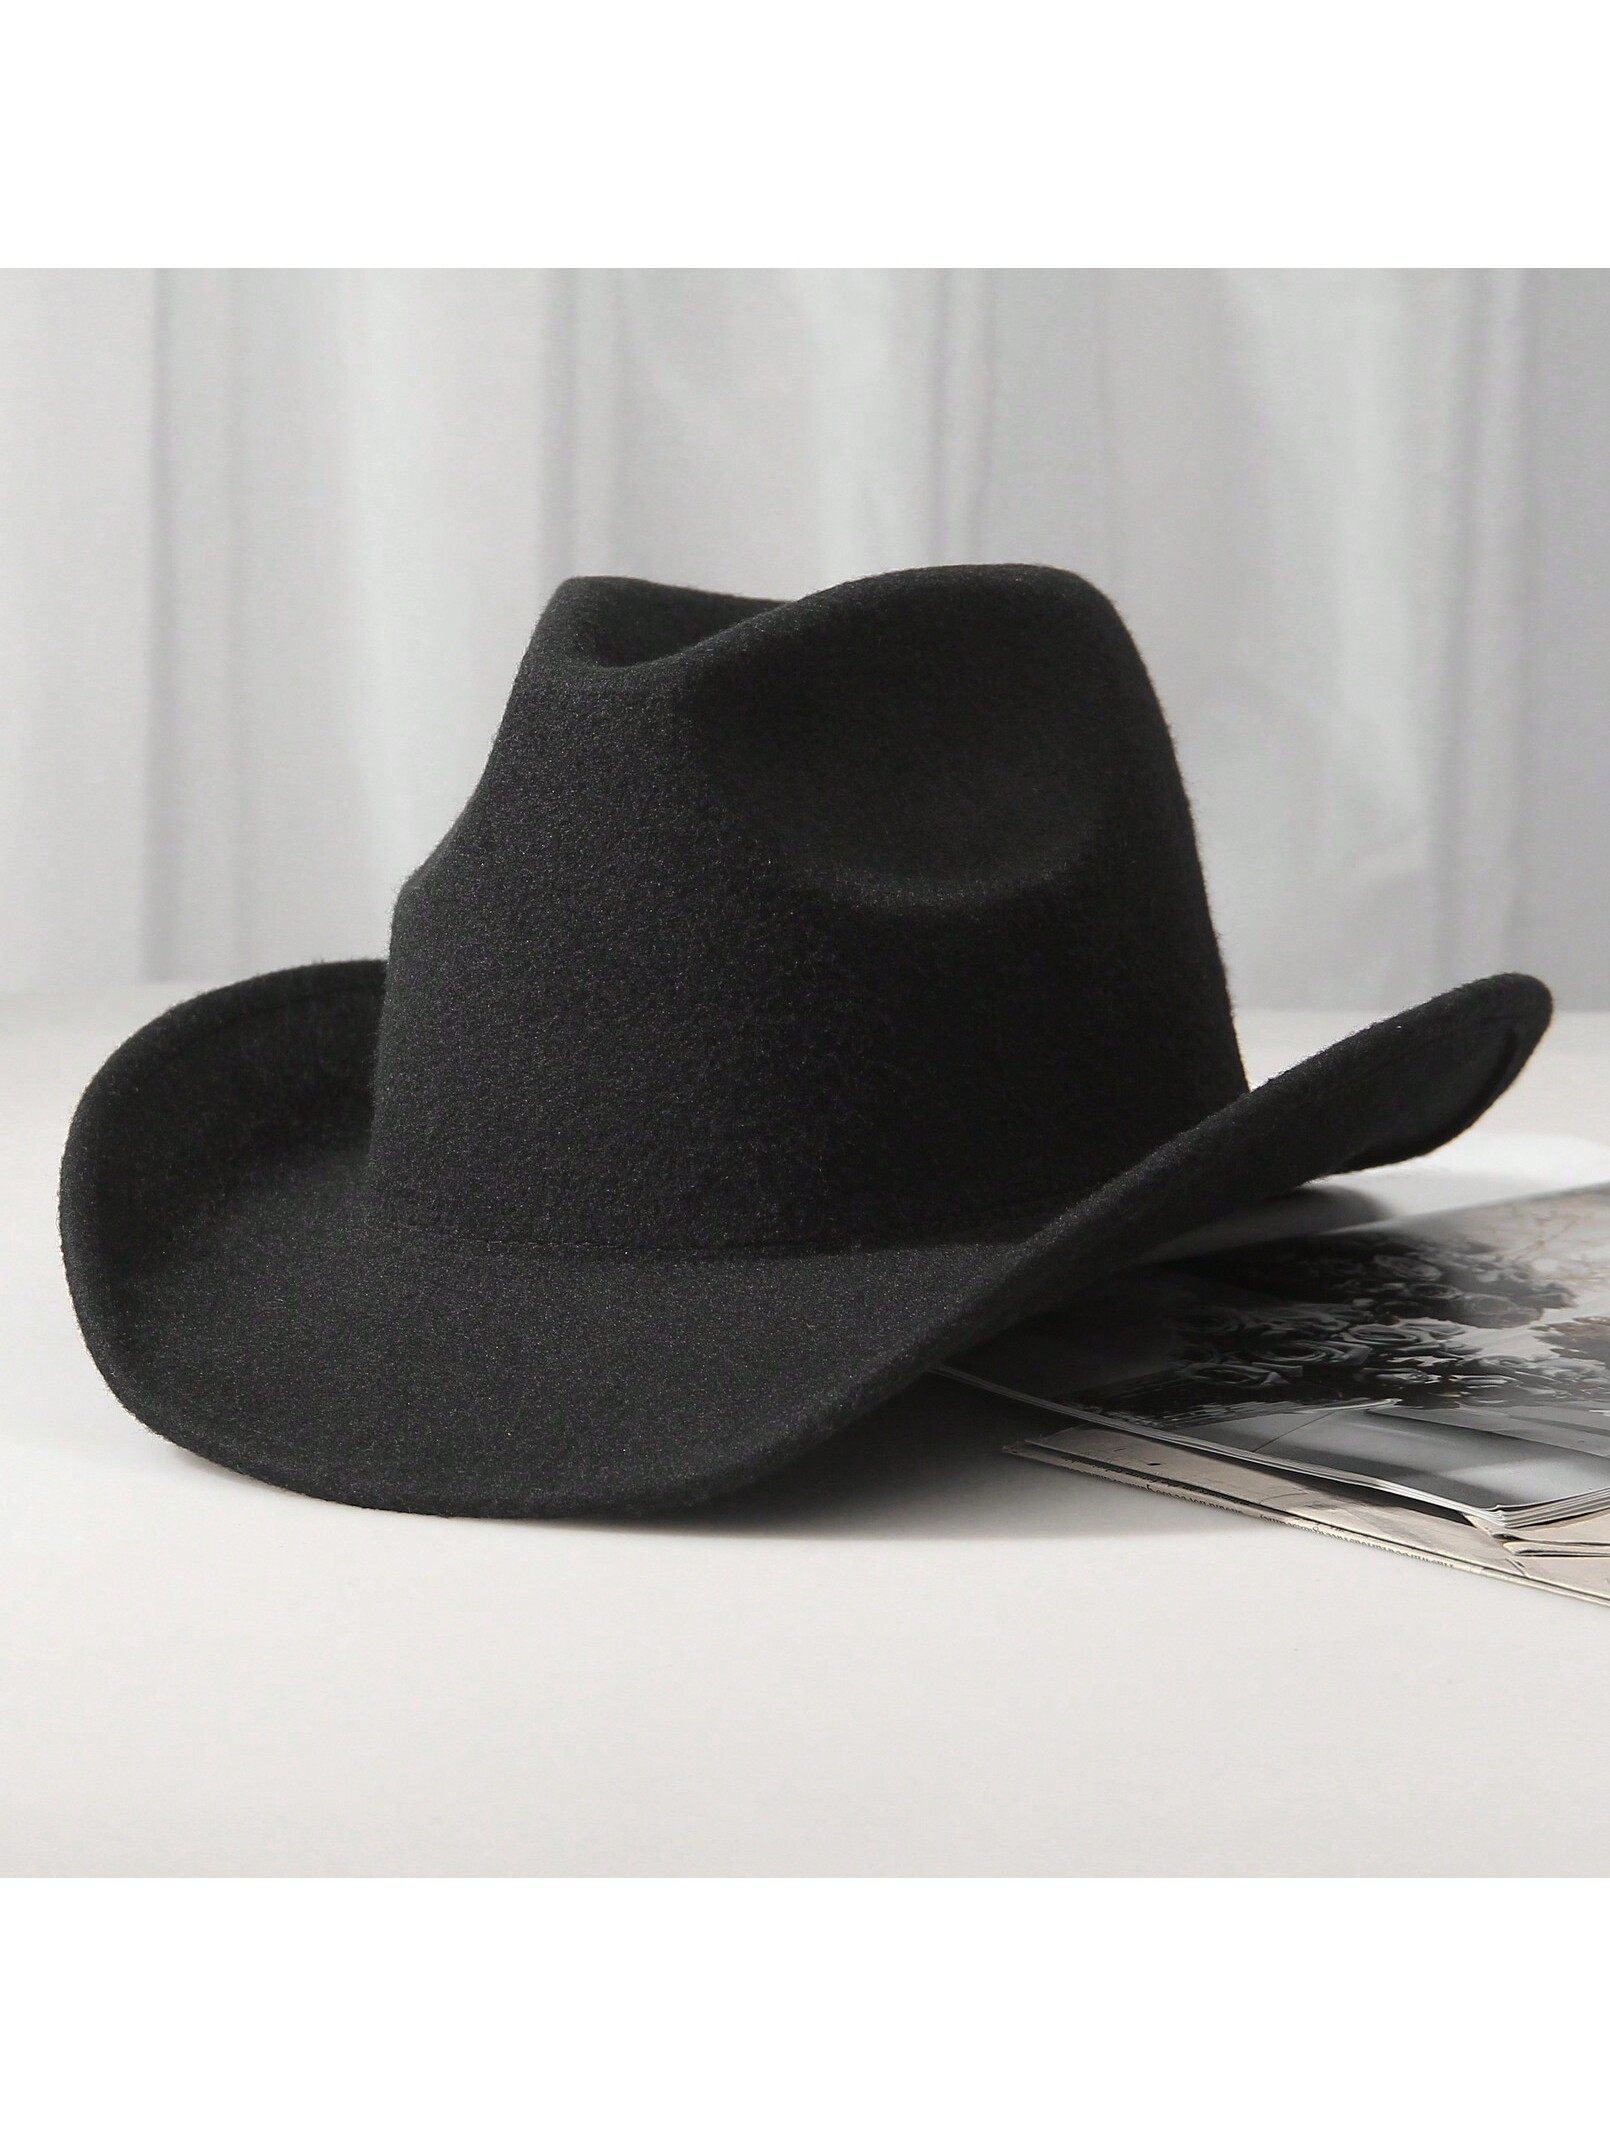 1шт унисекс шерстяная ковбойская шляпа-ковбойская шляпа в западном стиле черная ковбойская шляпа, черный